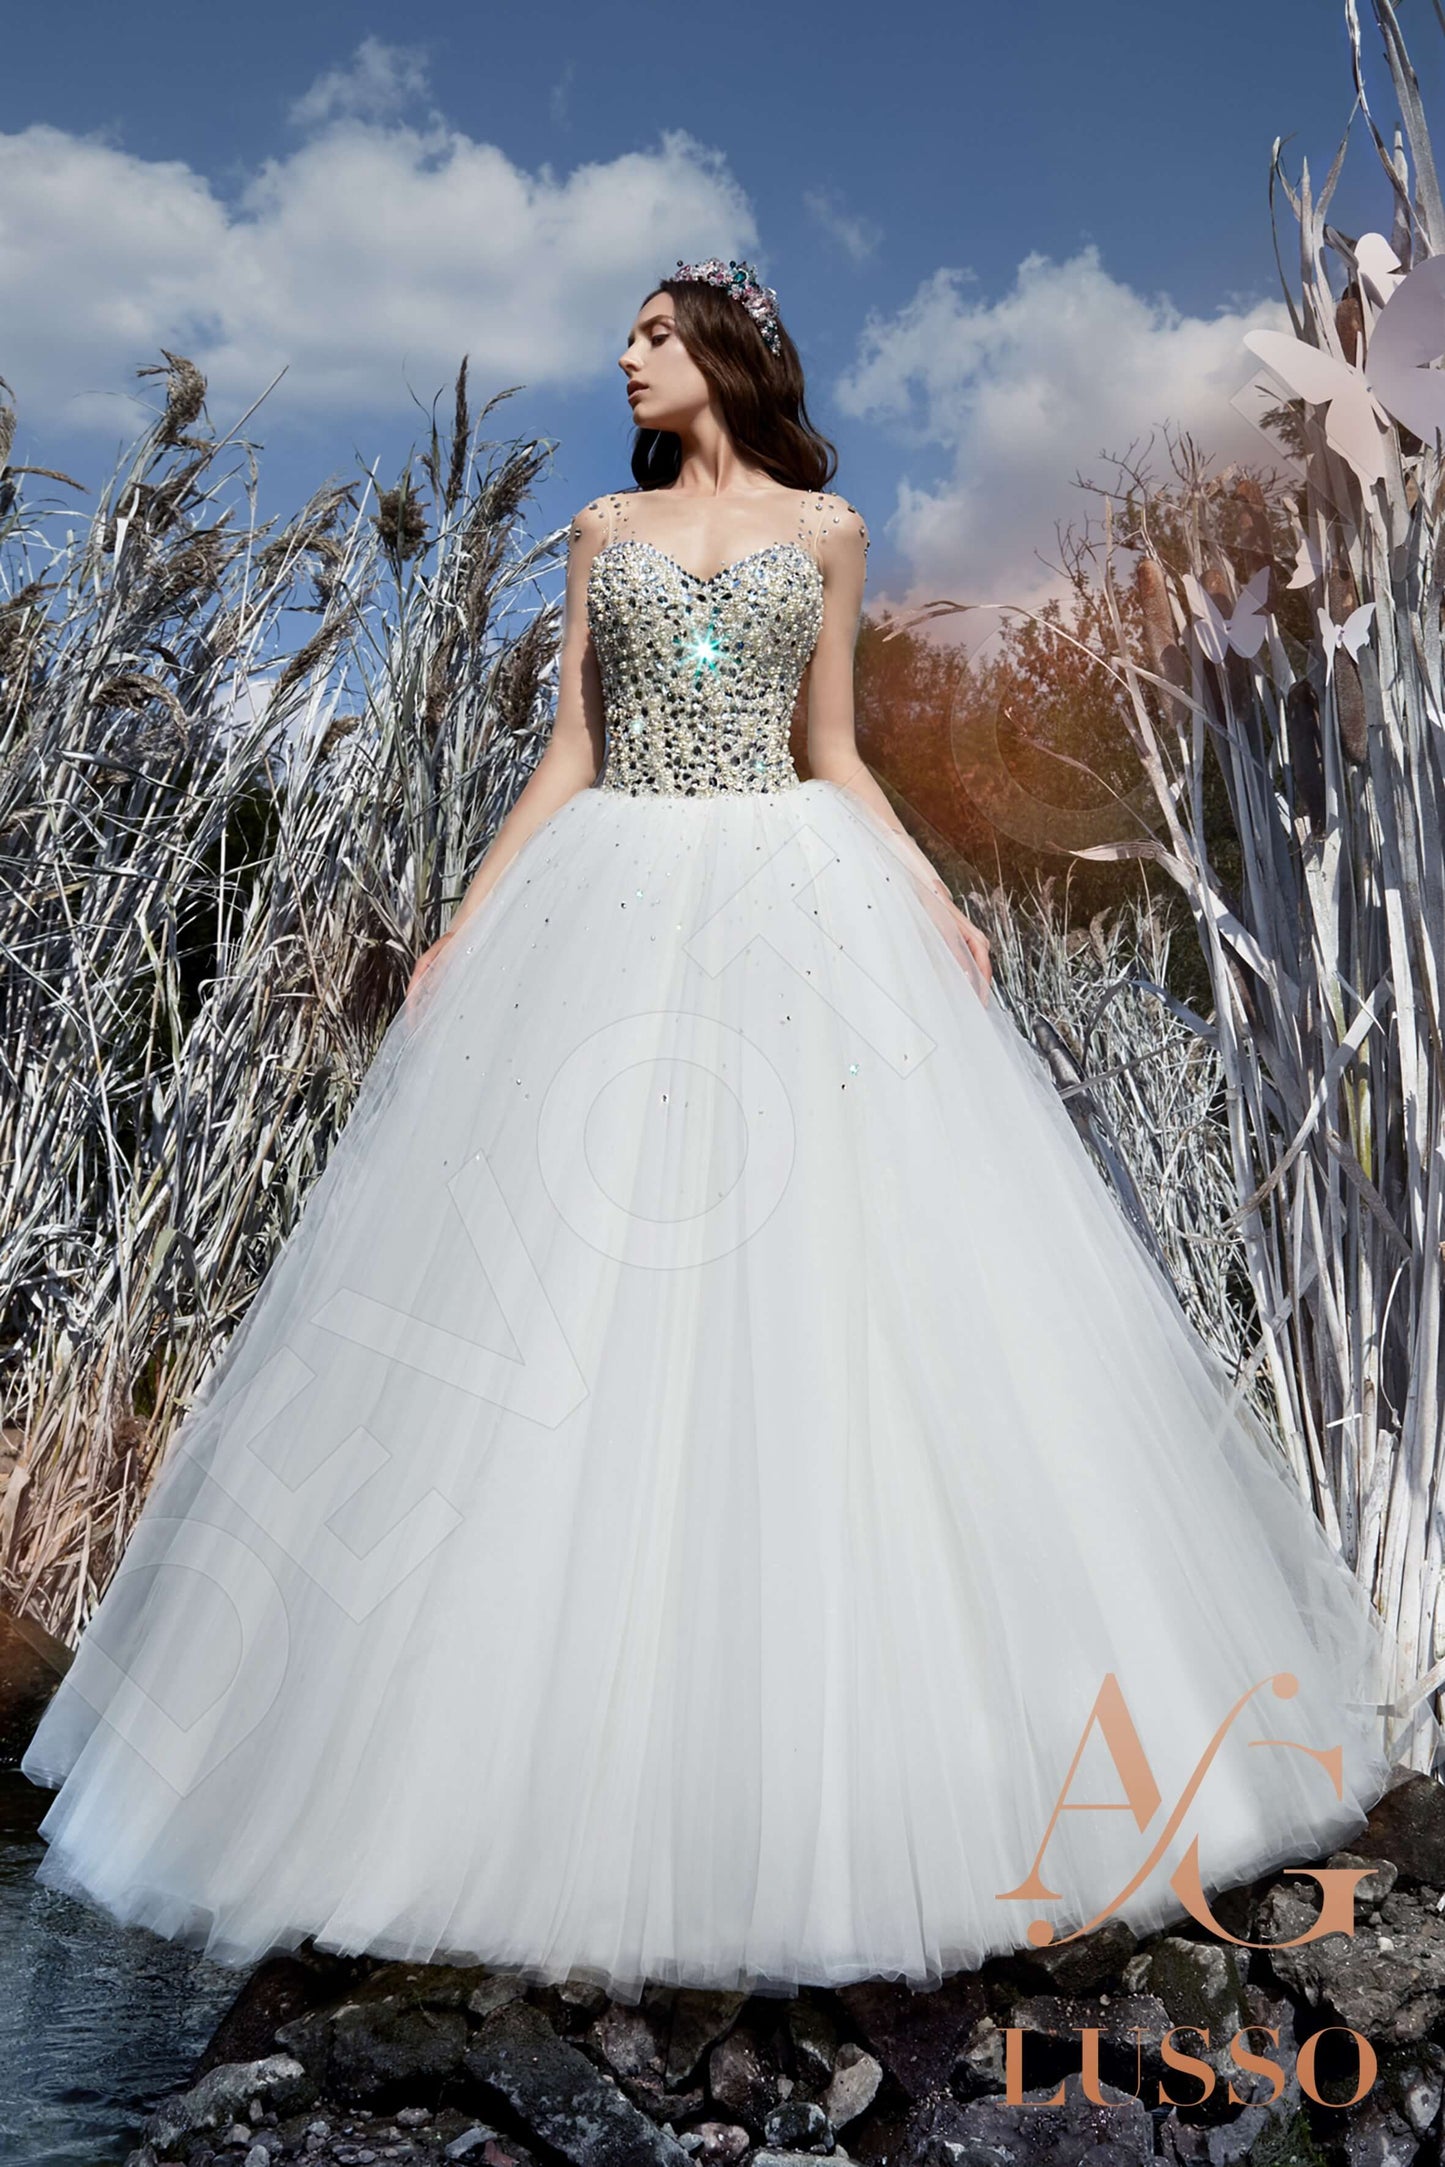 Daisee Long sleeve Princess/Ball Gown Open back Wedding Dress 8